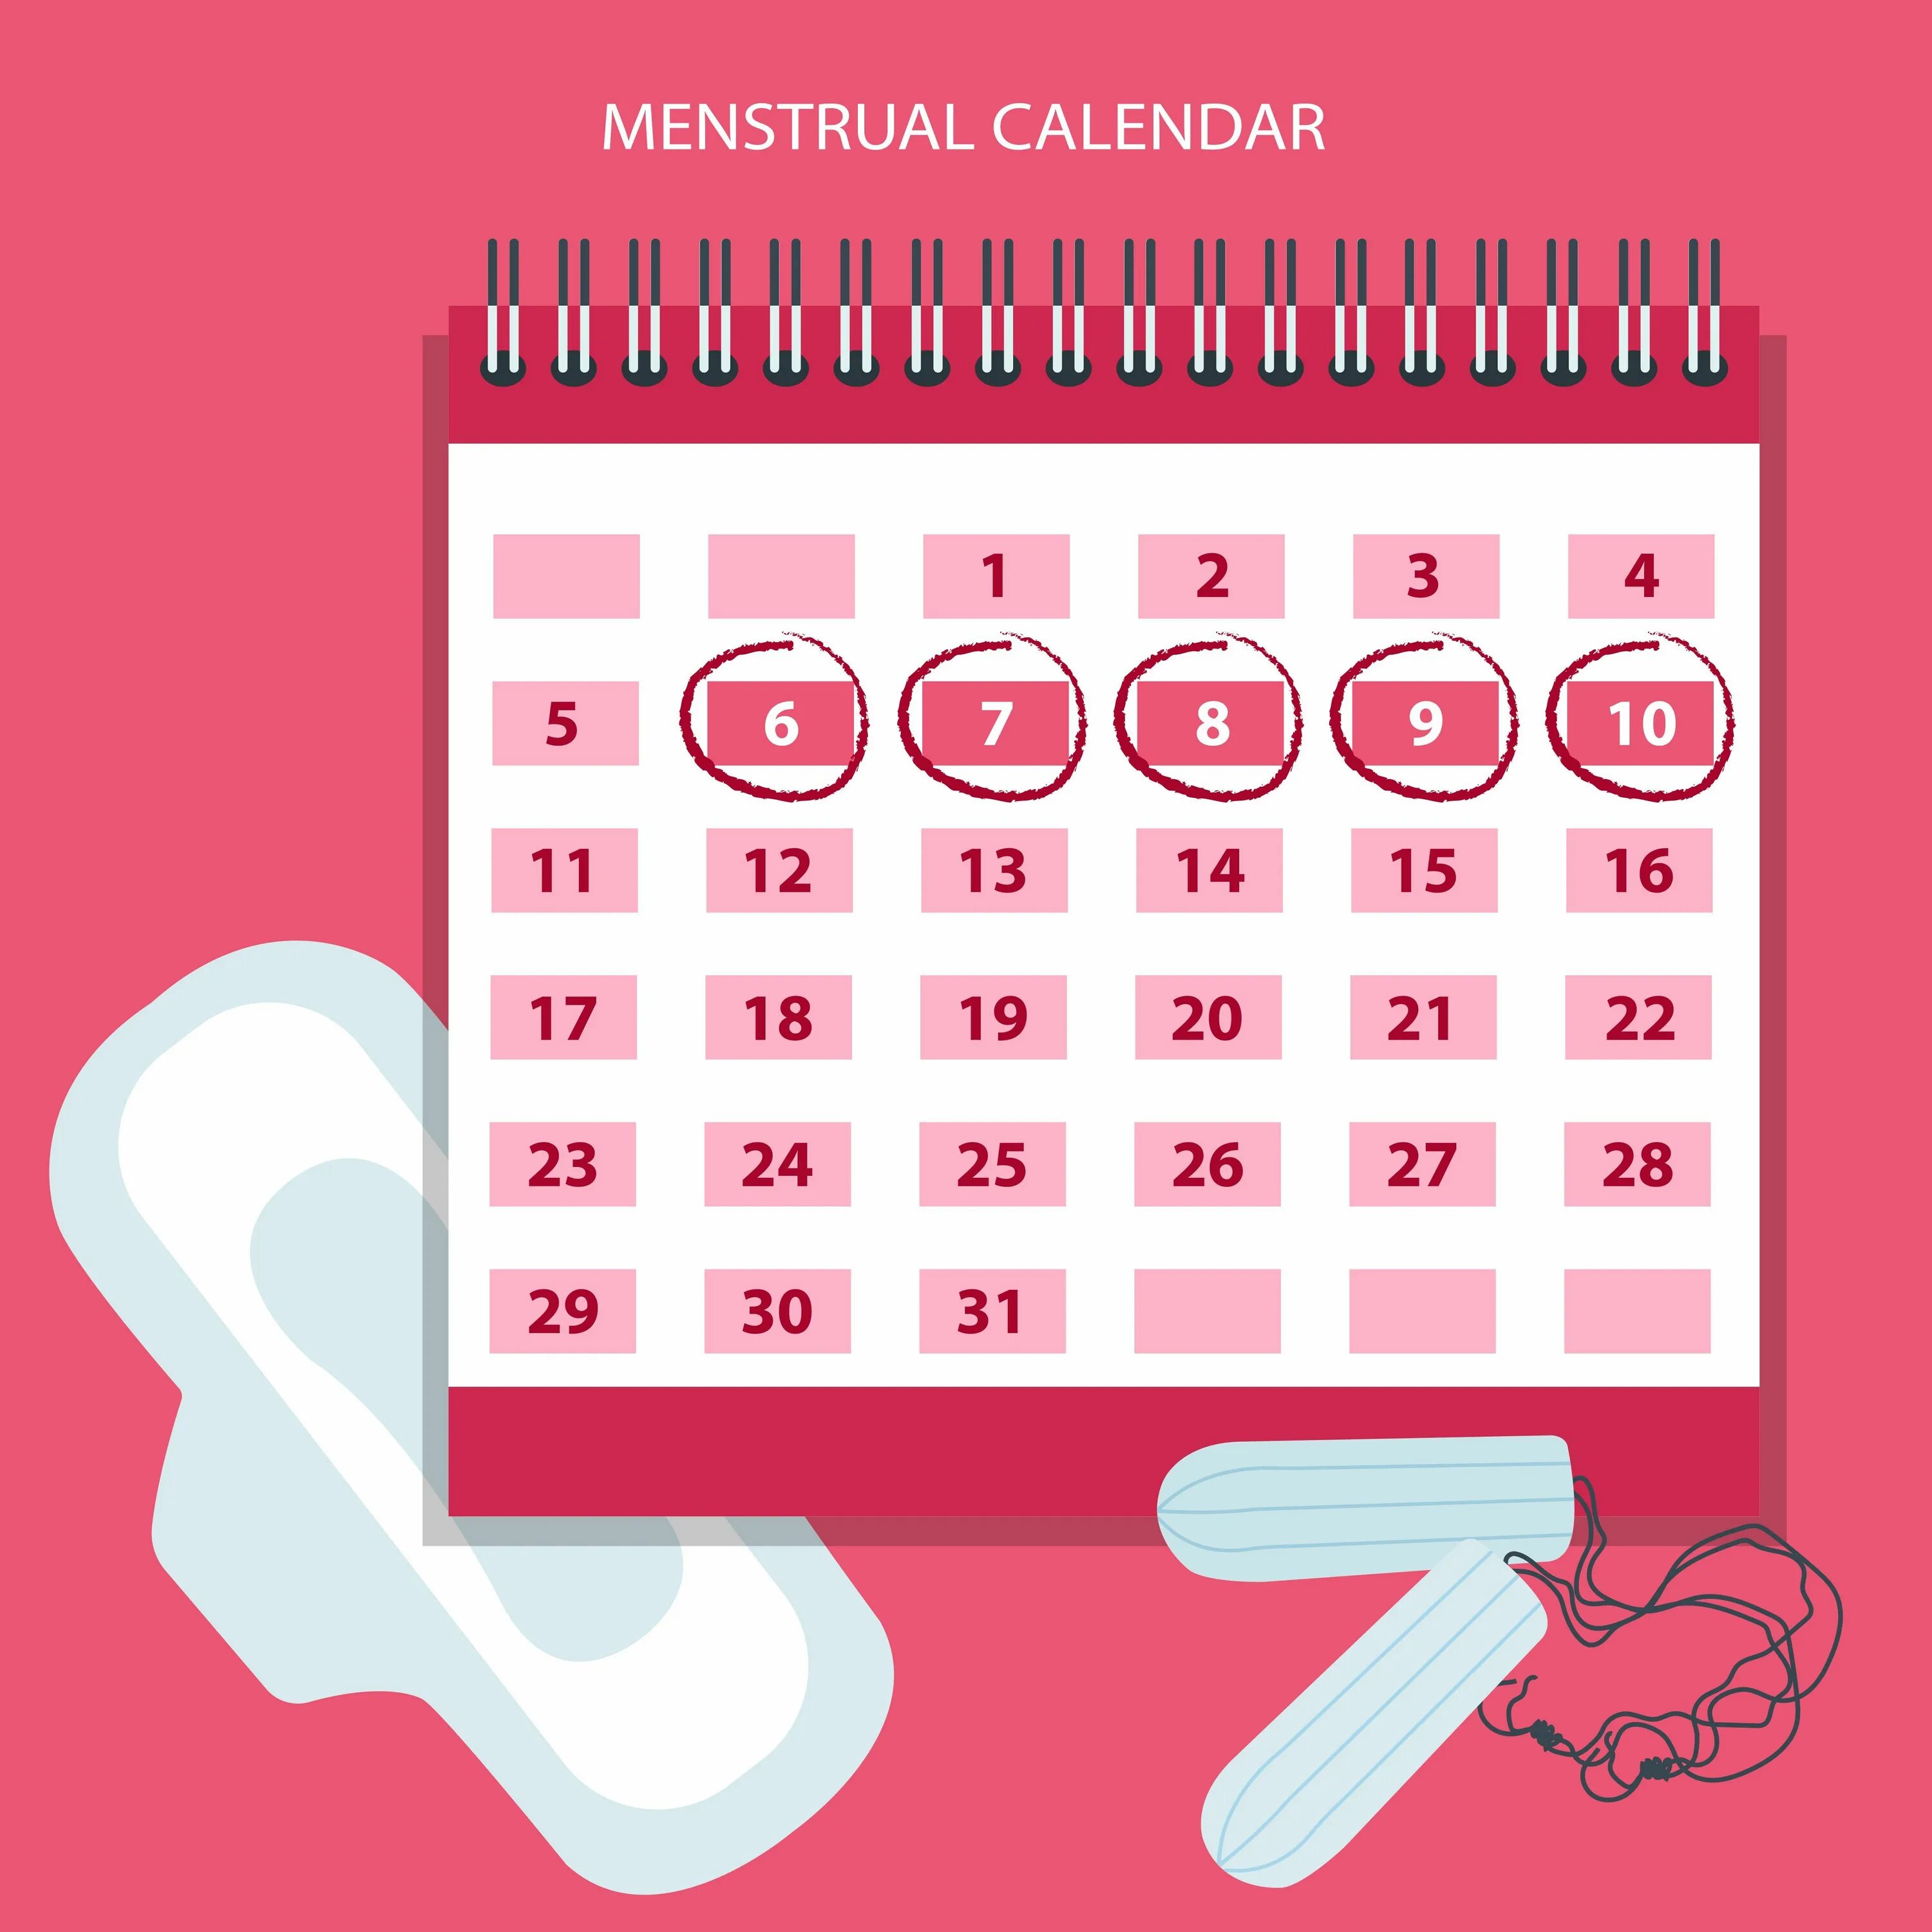 Календарь на моем телефоне. Календарь циклов менструационного цикла. Менструальный календарик. Менструальный календарь менструальный календарь. Календарь женских дней.